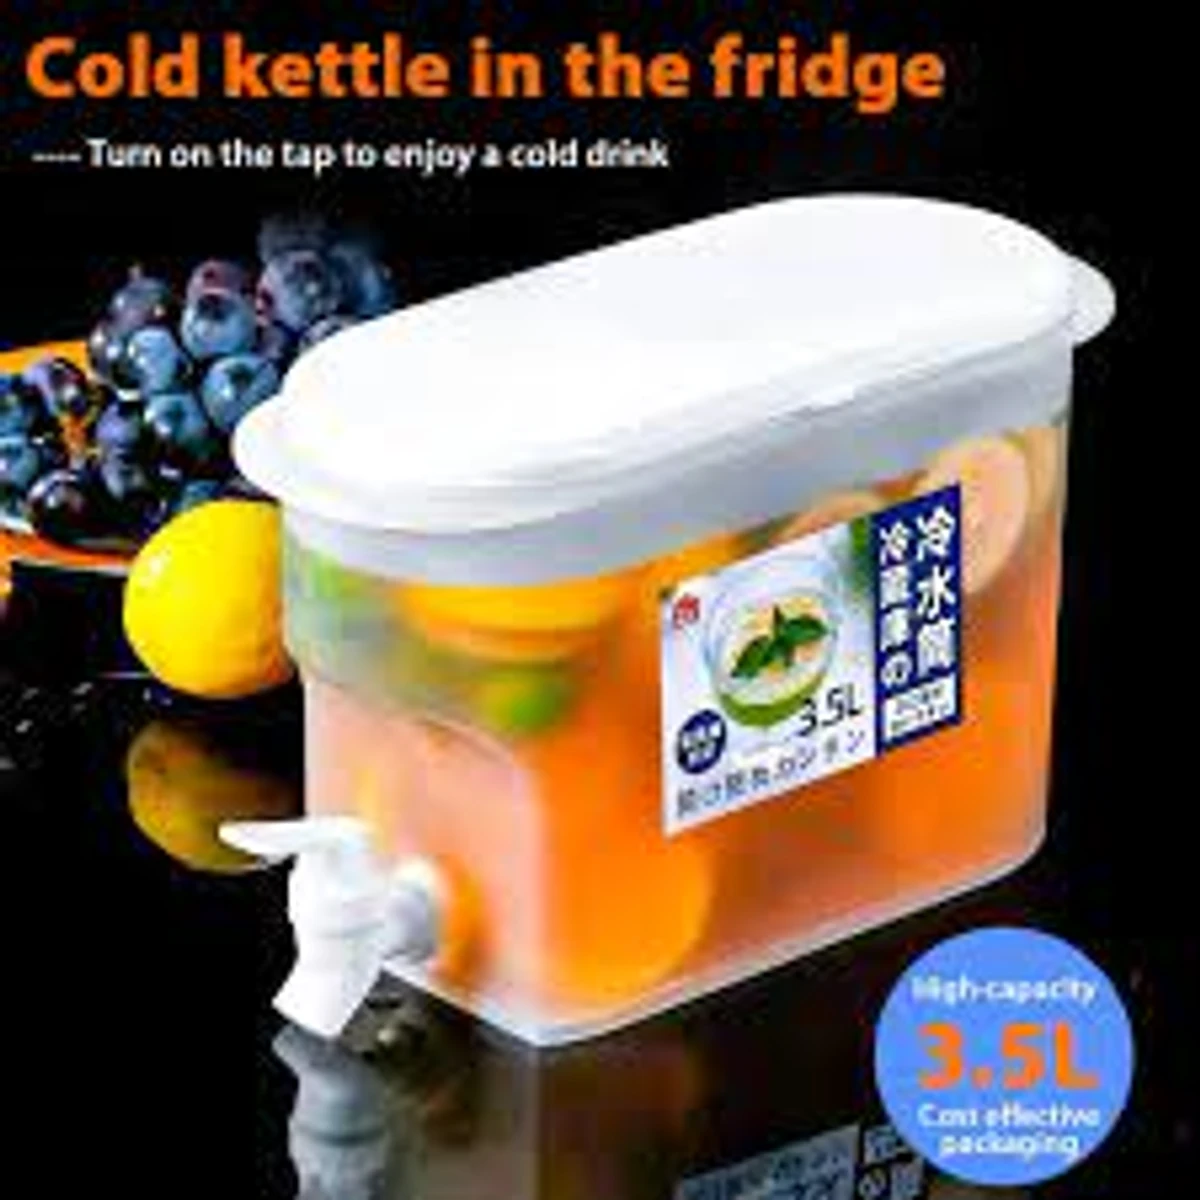 Drink Dispenser for Fridge, Plastic Water Jug Fruit Teapot Lemonade Bucket Drink Container for Fridge, 3.5L/1 Gallon